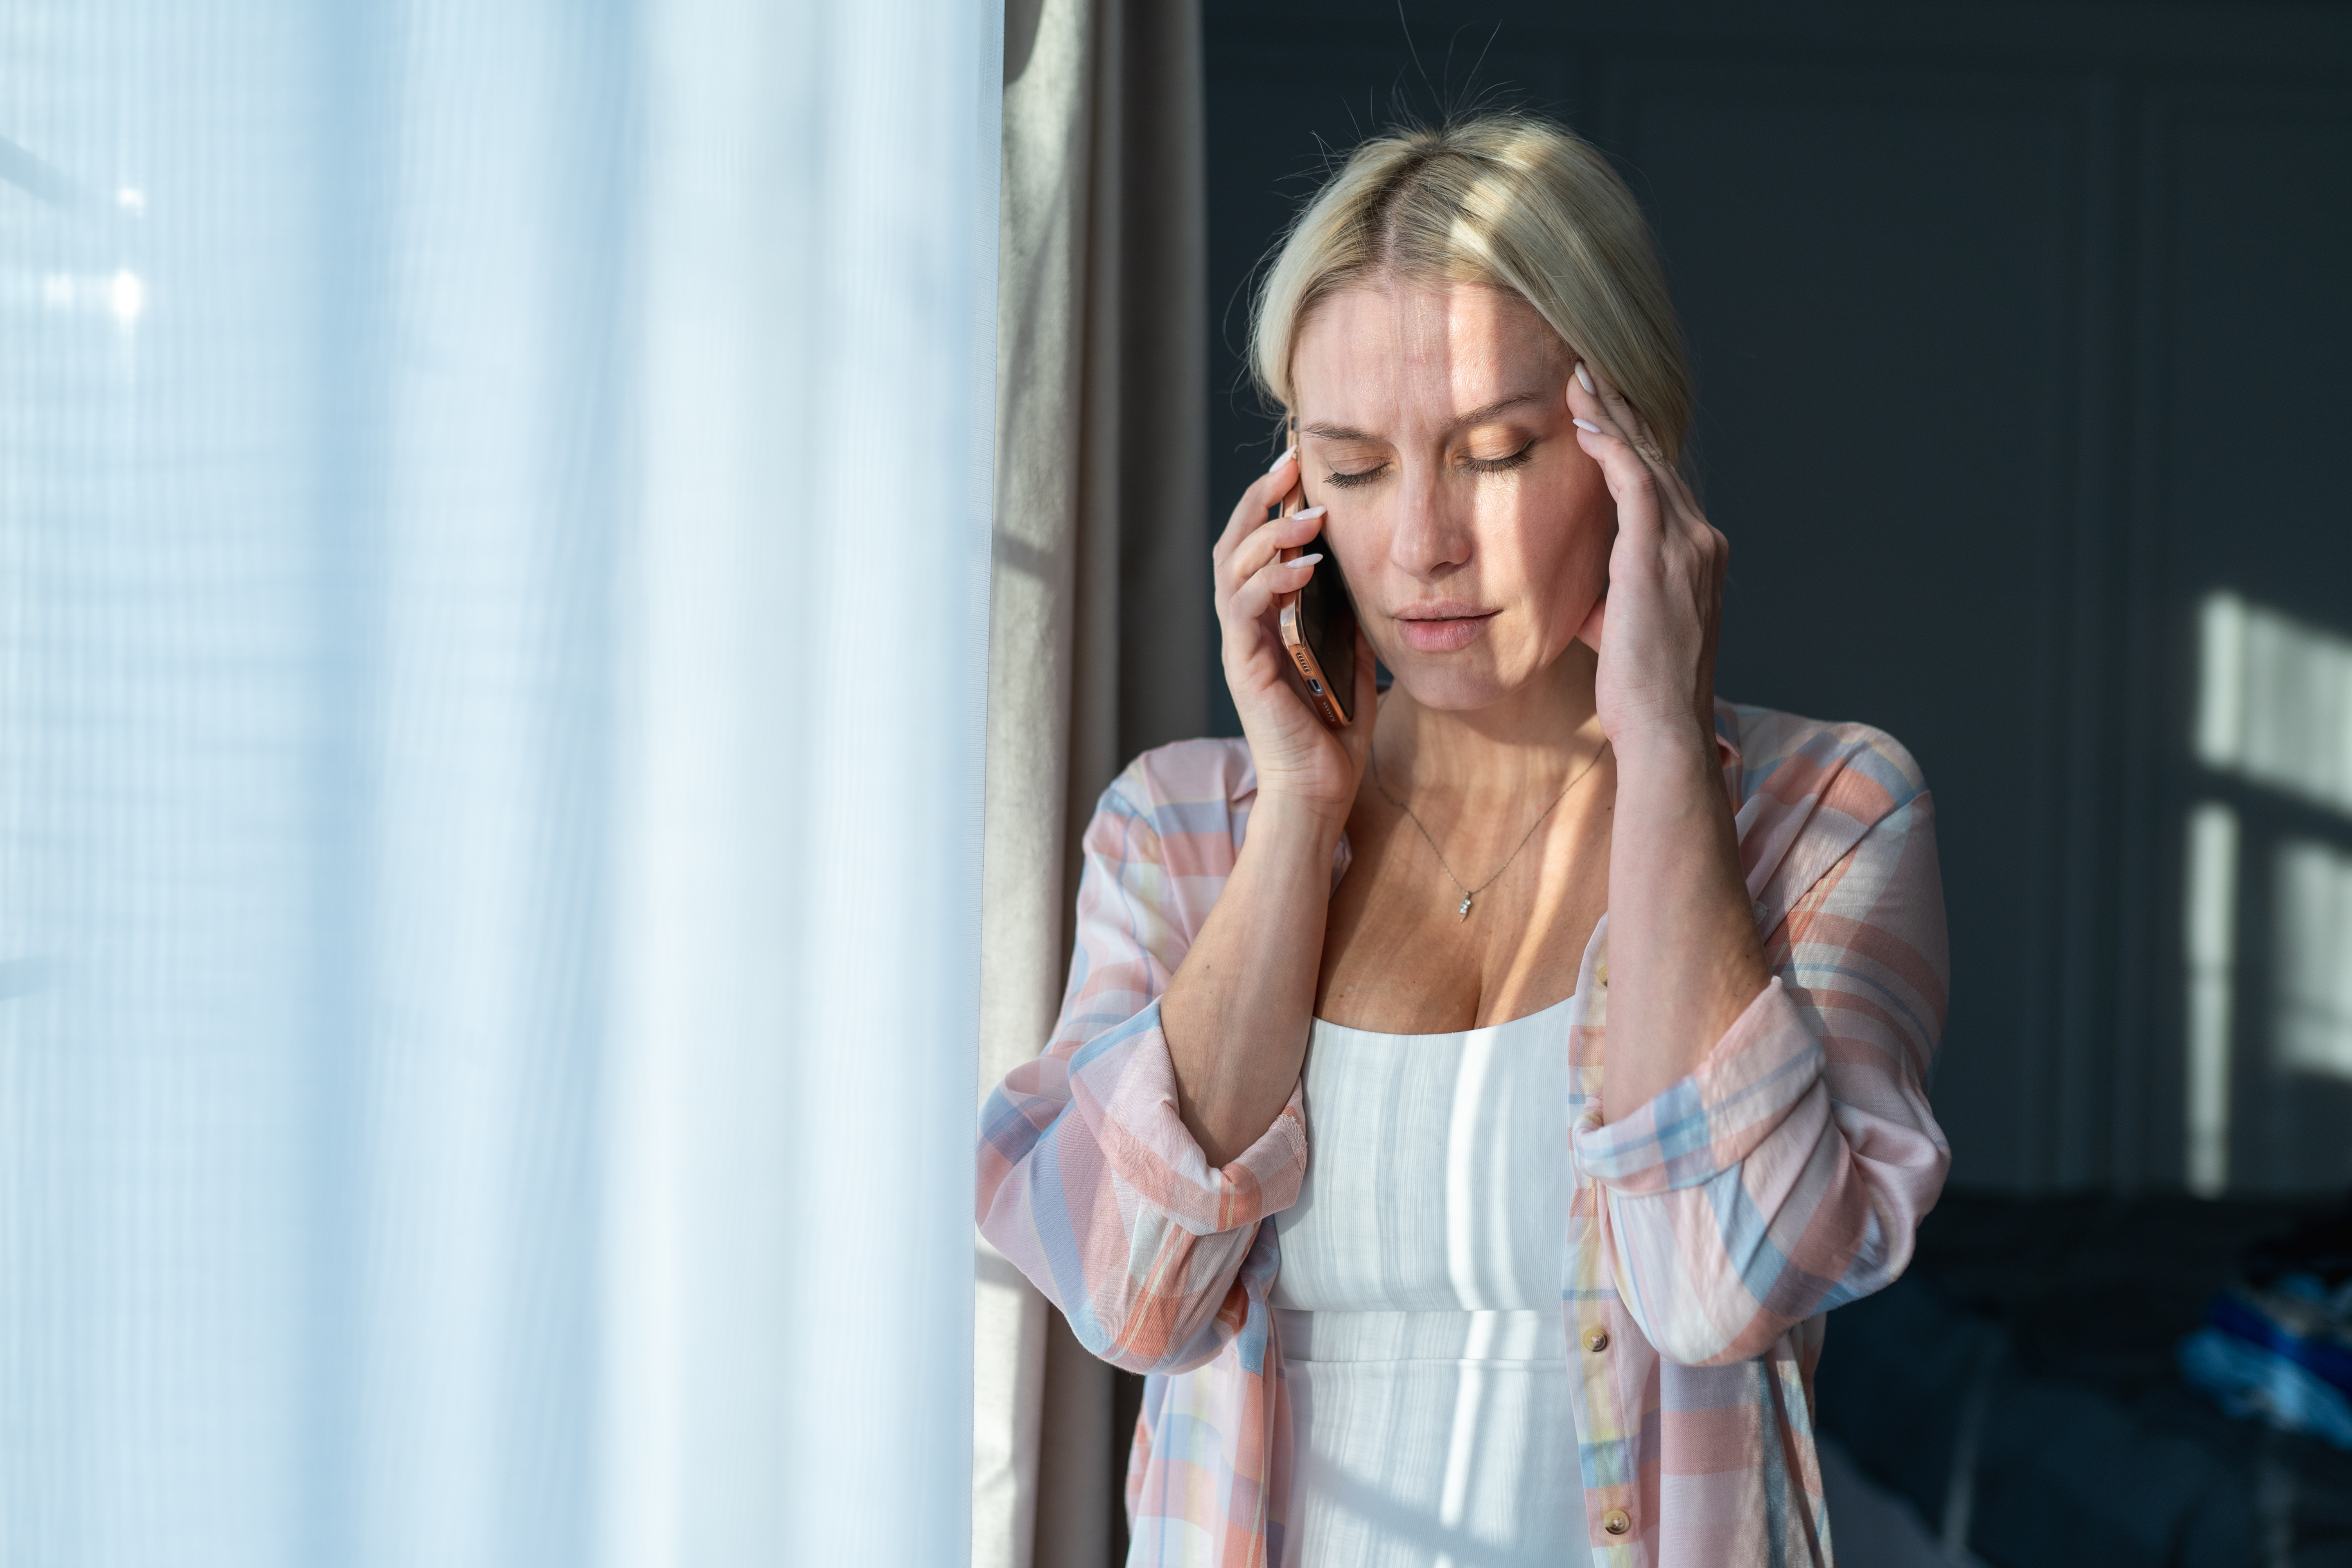 Maux de tête et désespoir. Une femme blonde est au téléphone, tout en se touchant la tête près d'une fenêtre lumineuse | Source : Getty Images